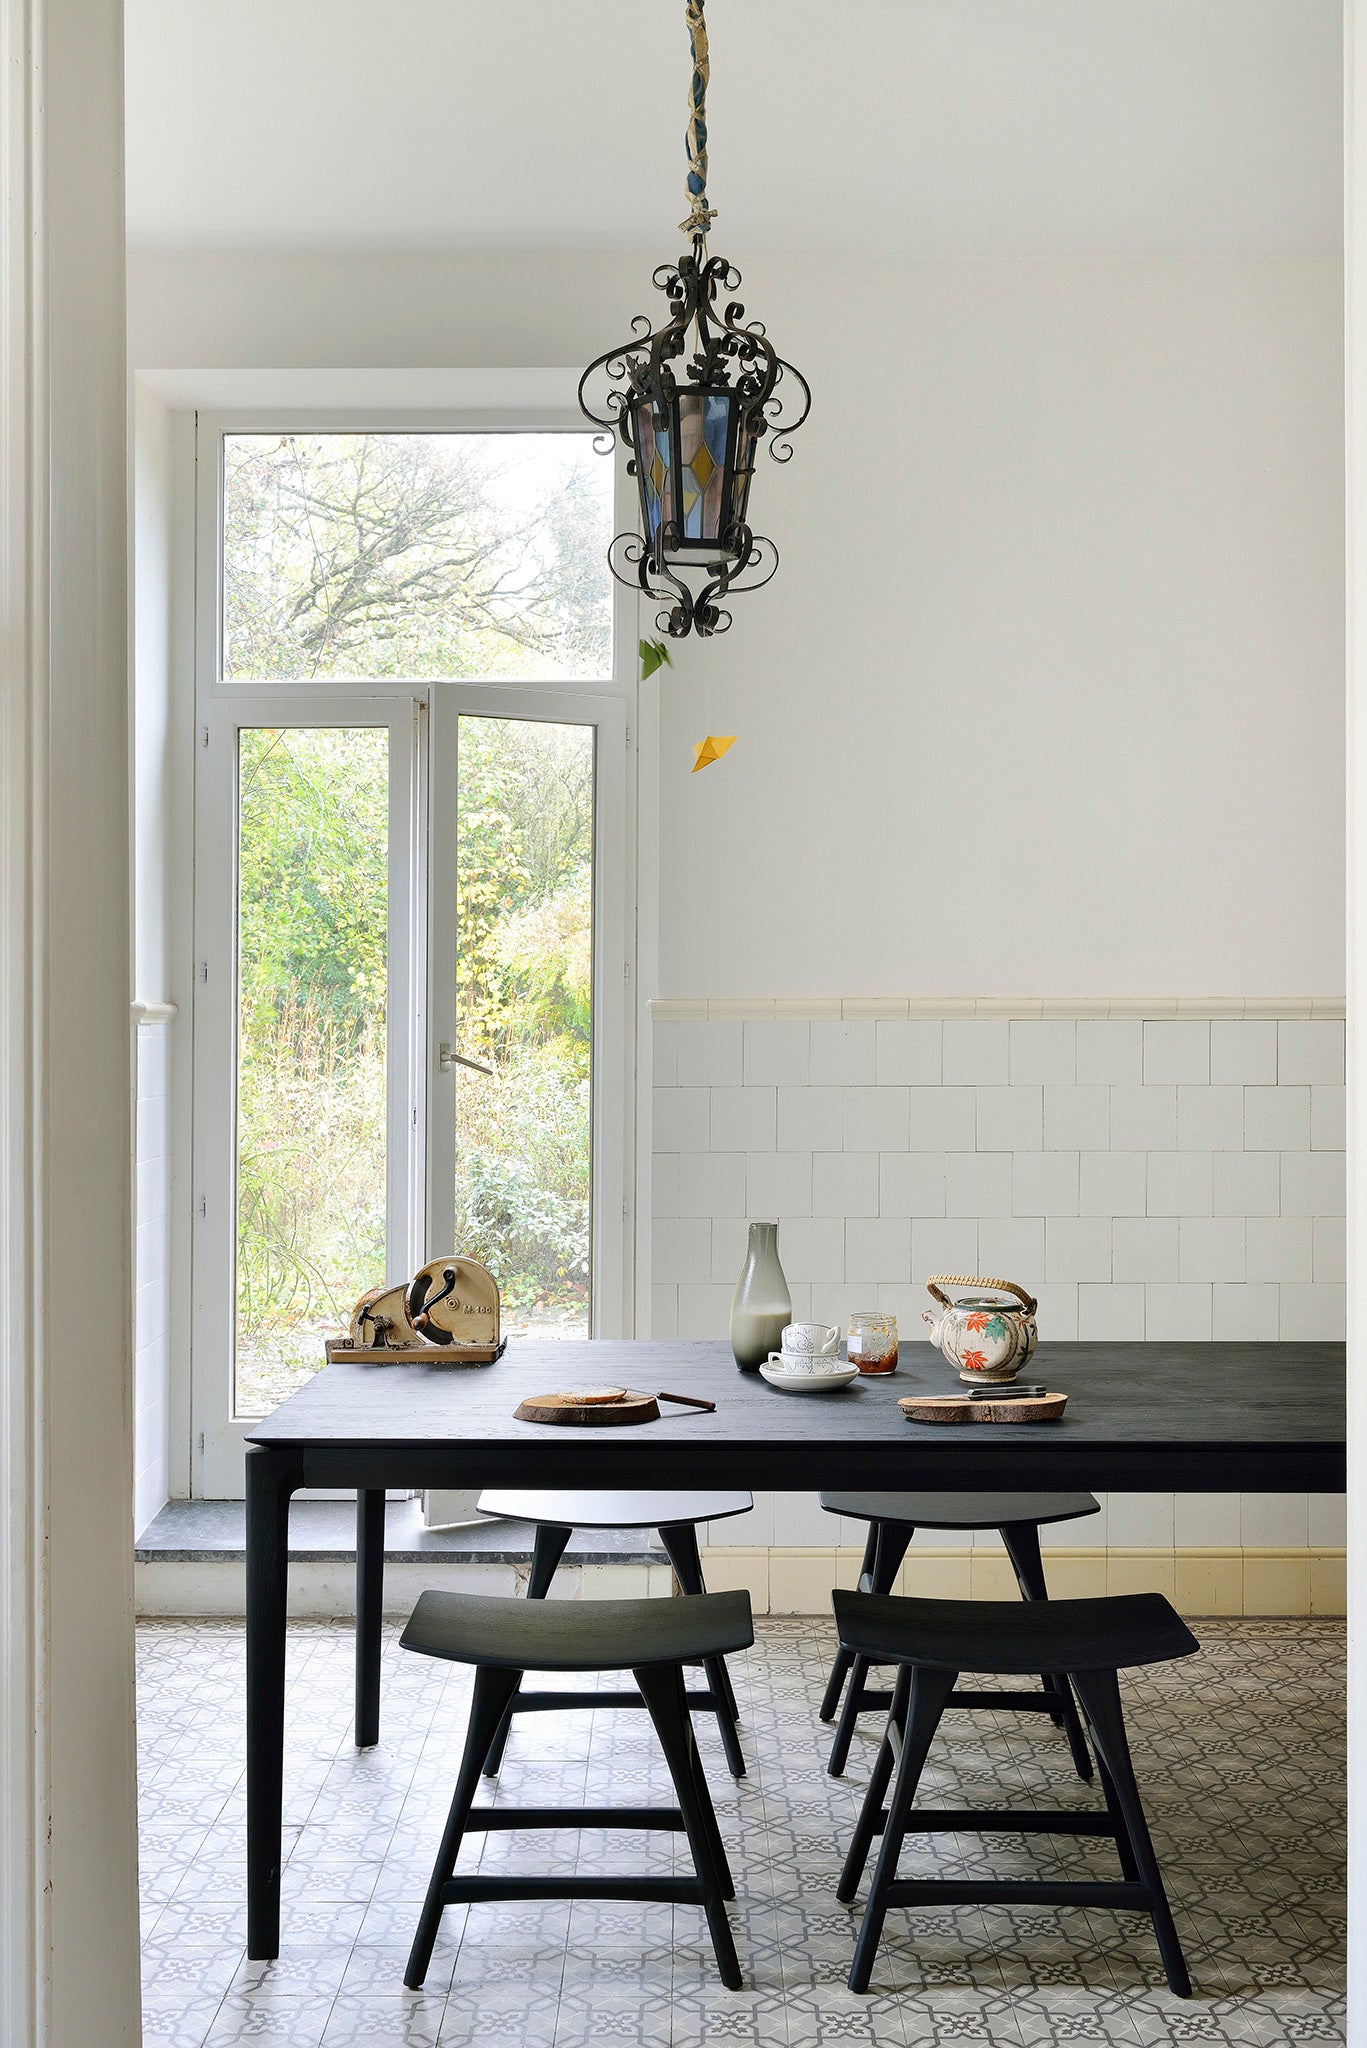 比利時原裝進口實木傢俬 - 餐桌系列 - Arc系列黑色橡木餐桌